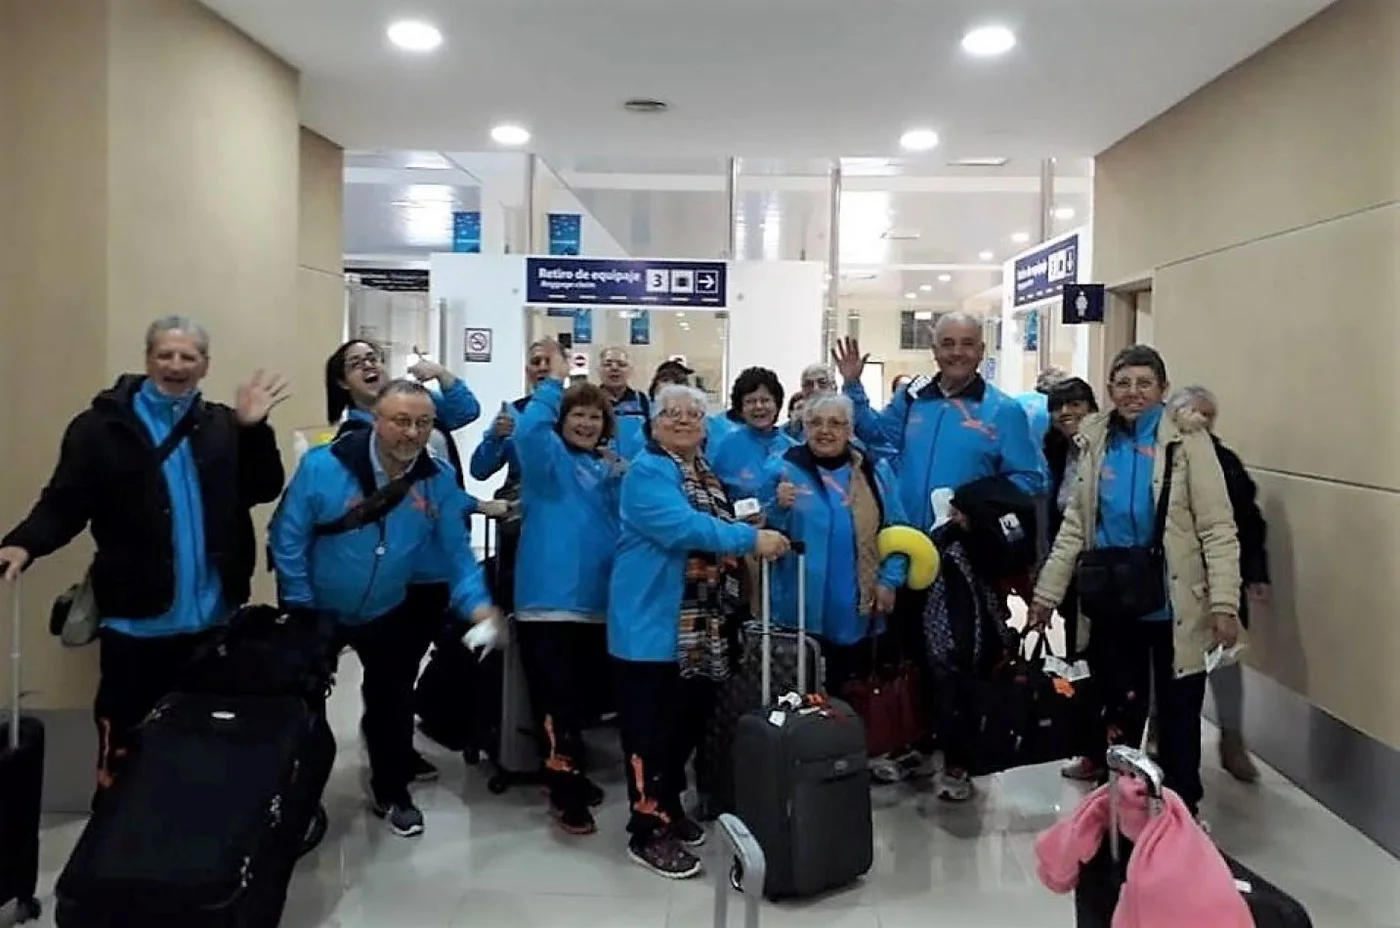 Parte de la delegación fueguina ya arribó a Bariloche